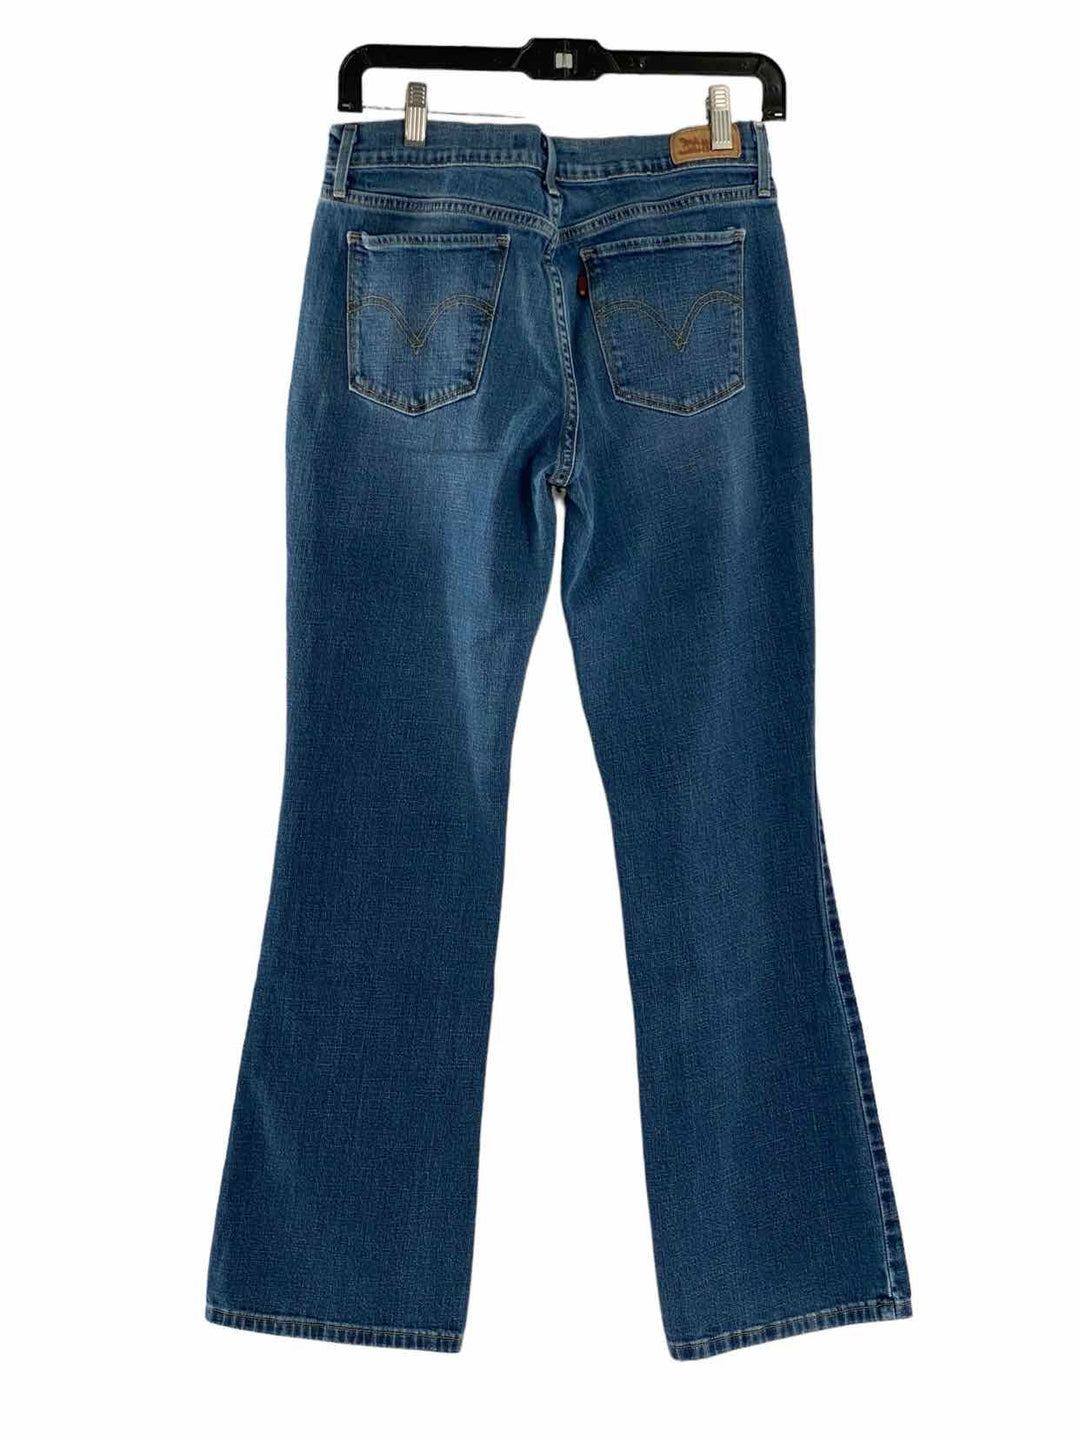 Levi's Size 6 Jeans